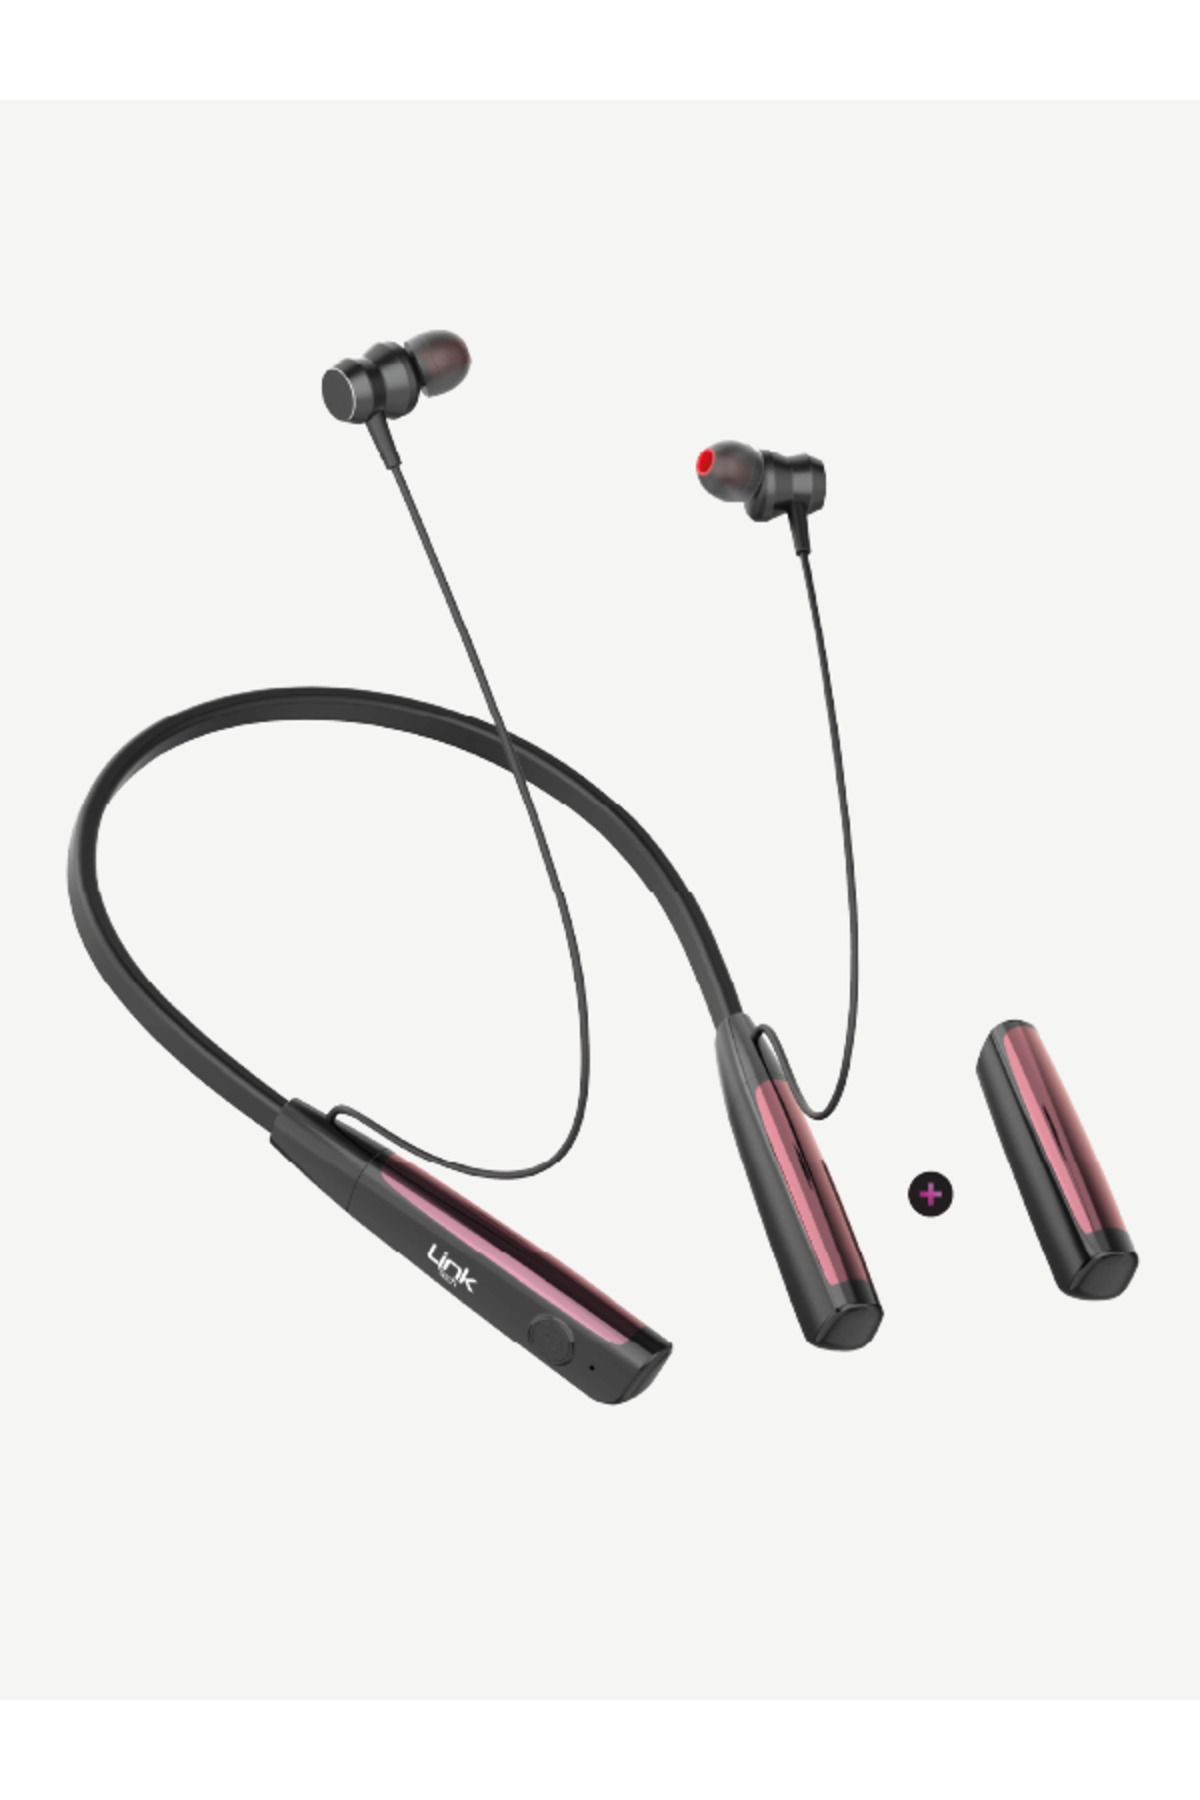 Linktech H999 Type-C Mıknatıslı Boyun Askılı Bluetooth Kulaklık - 90 Saat Müzik + Yedek Batarya